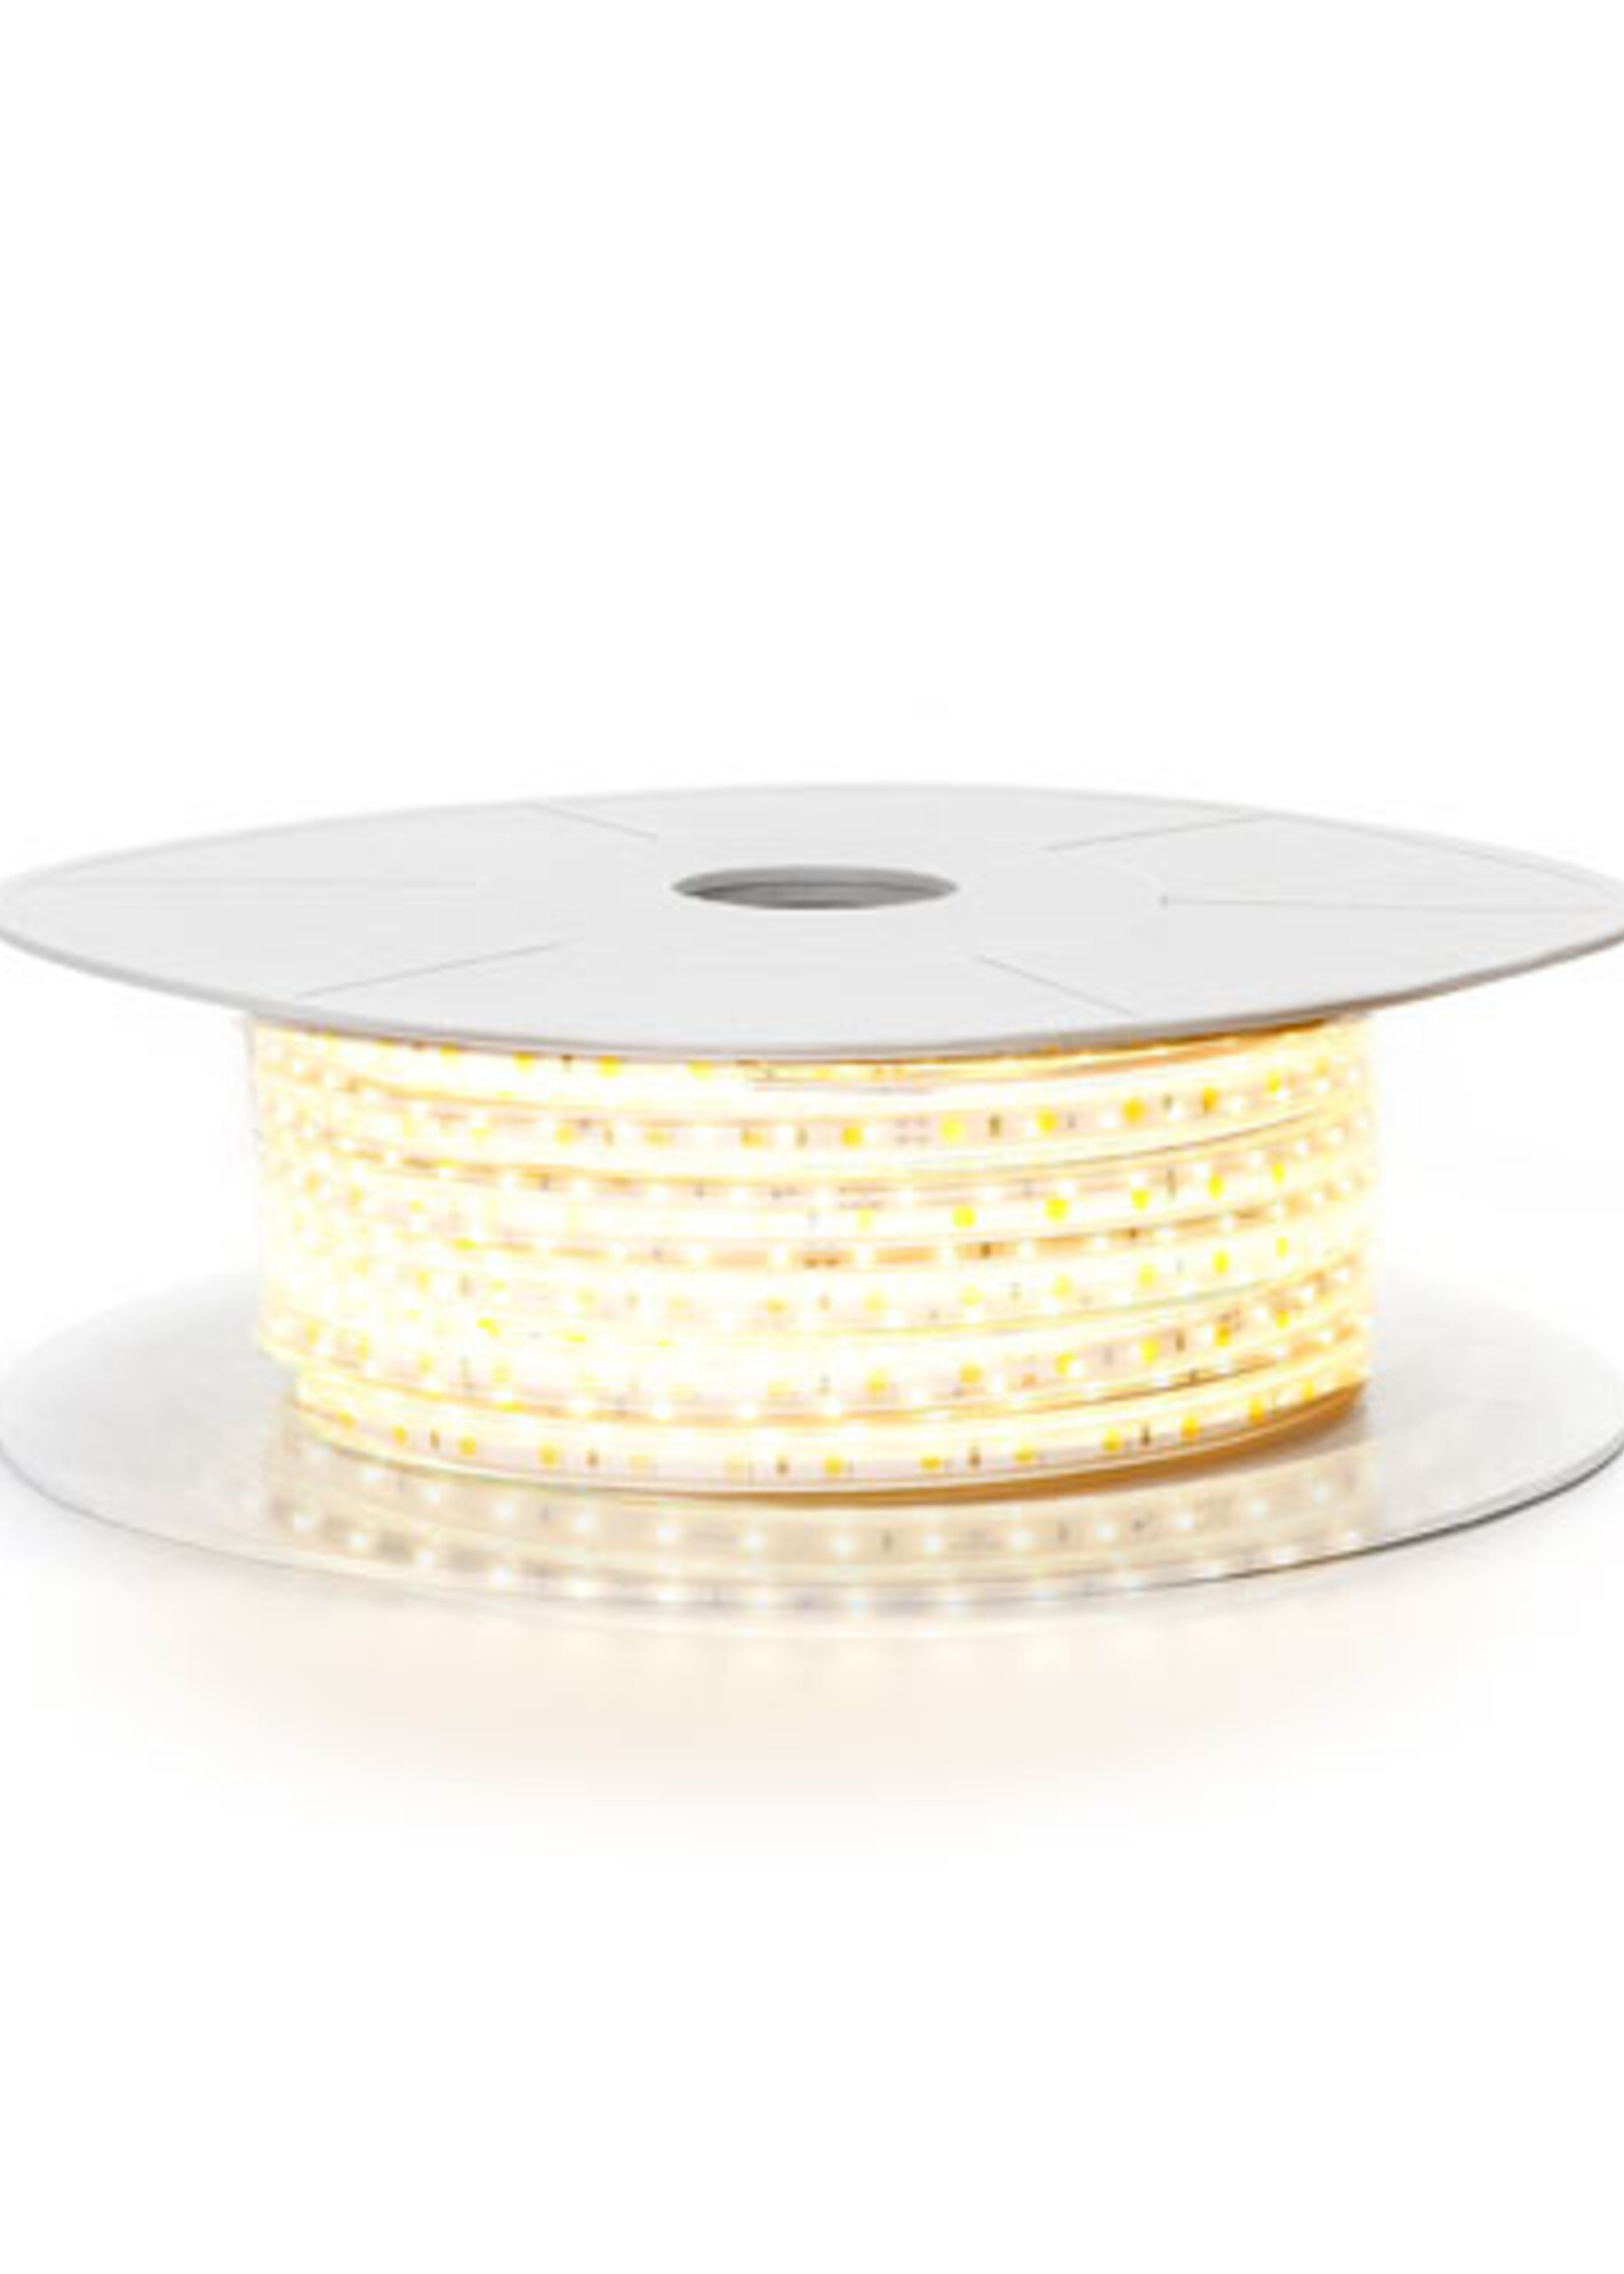 LEDWINKEL-Online LED Strip 50 meters IP65 Basic-60 LEDS/m 220V